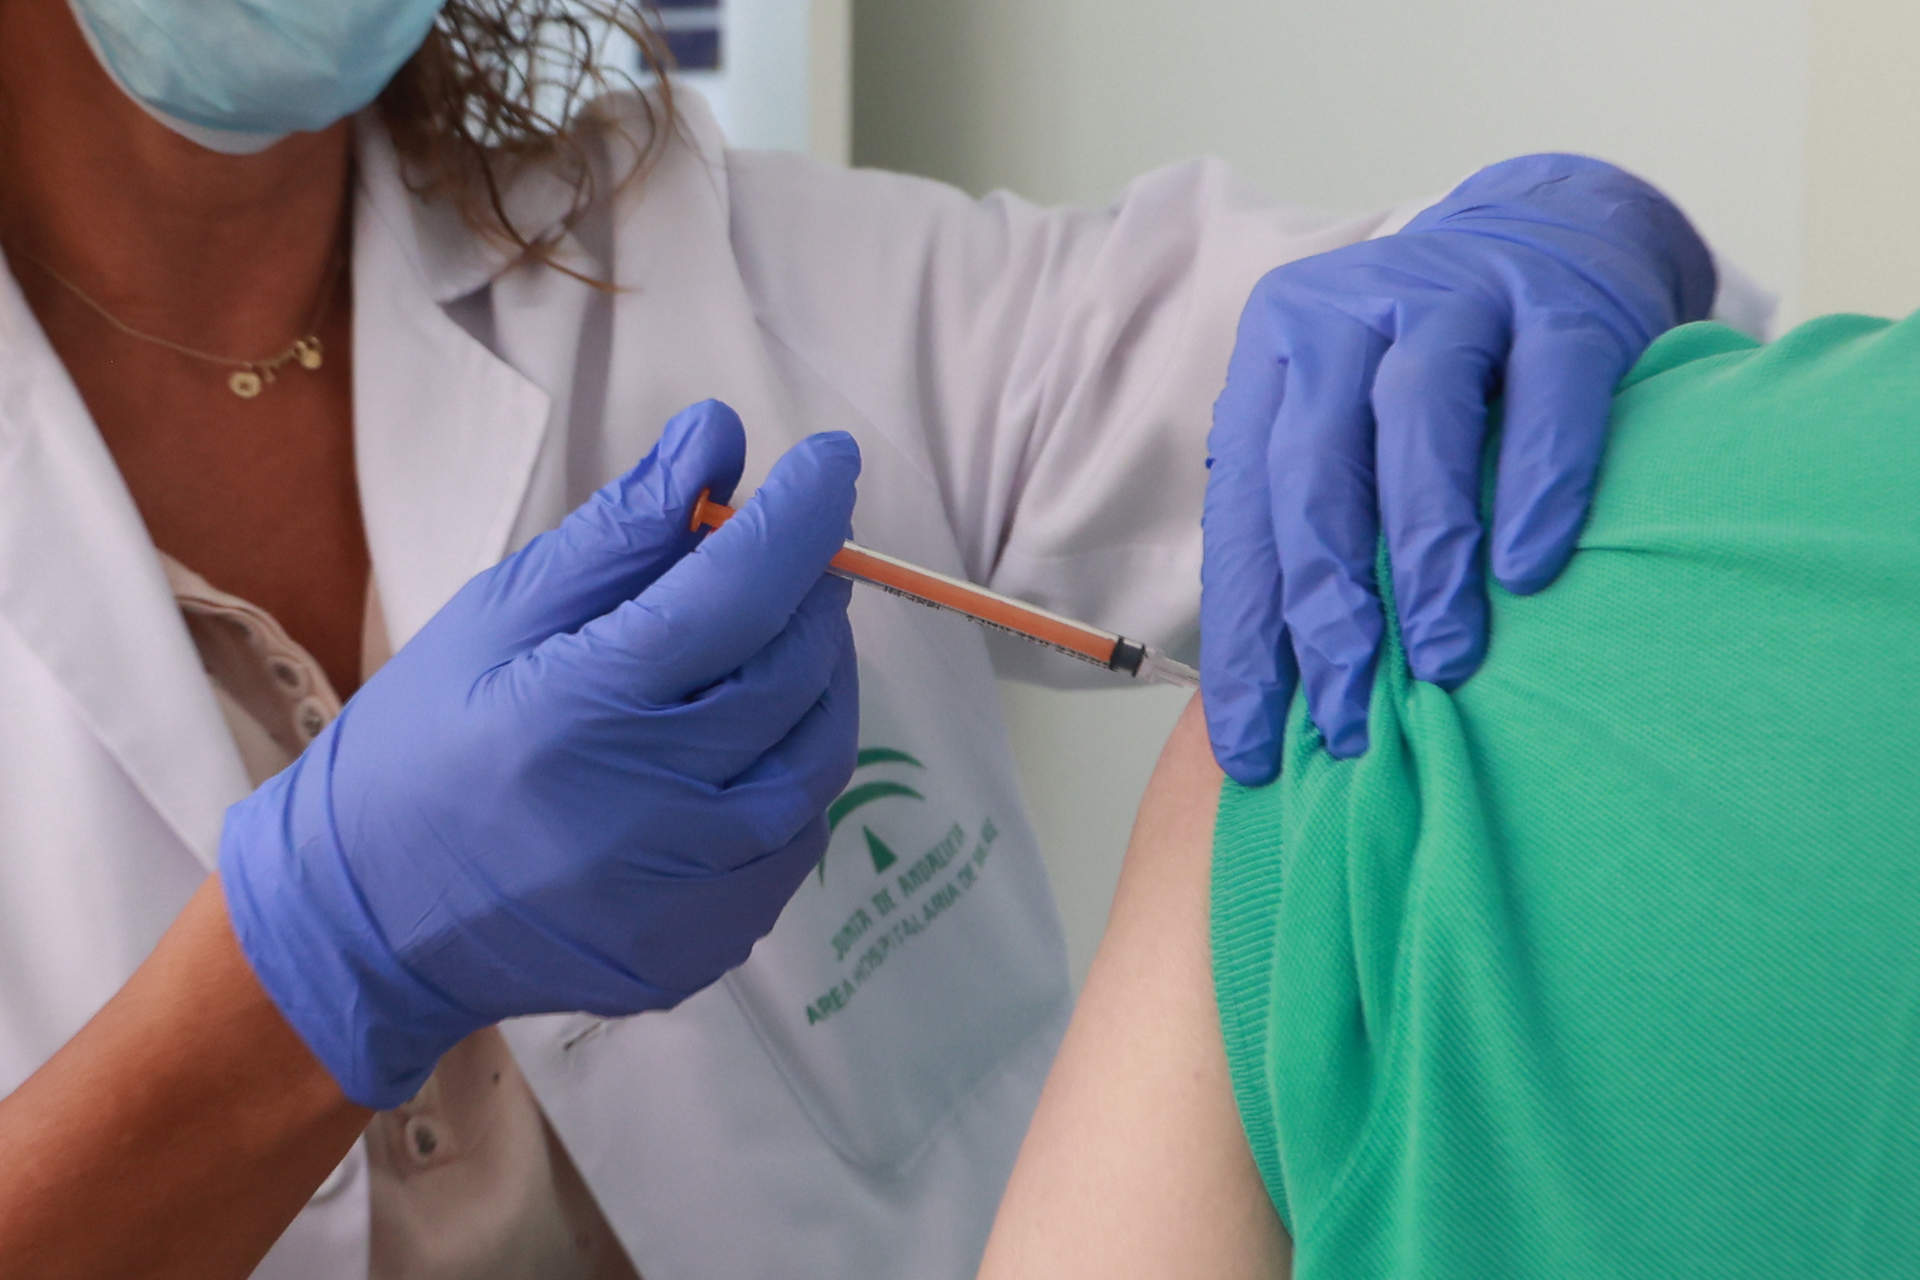 Cae el porcentaje de mujeres embarazadas que se vacunan contra la gripe. Foto: Rocío Ruz / Europa Press